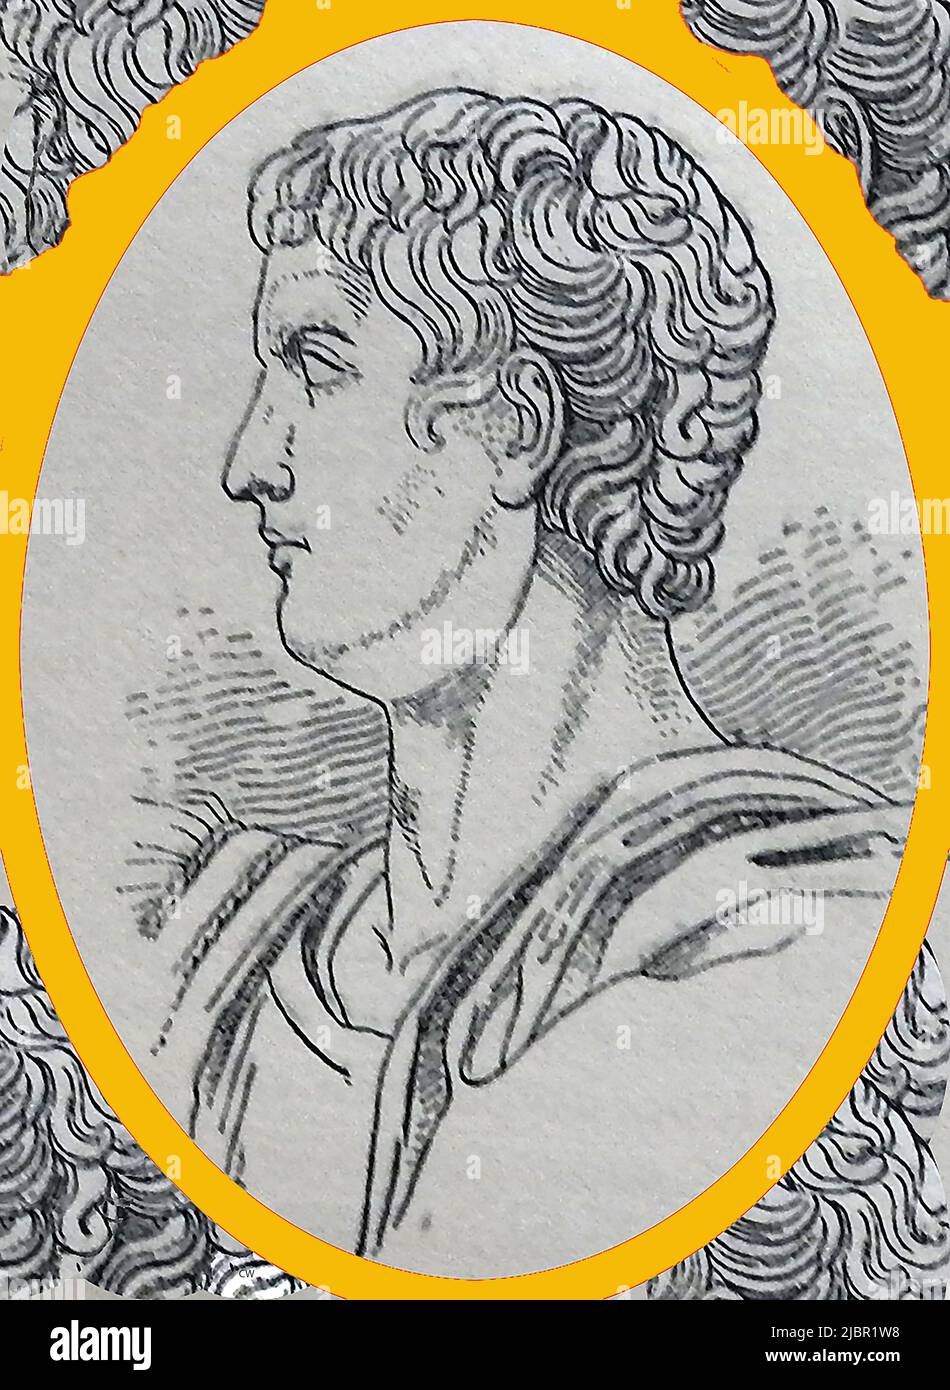 Ein Porträt des (Caius oder Guius) Caesar Augustus Germanicus (12 n. Chr. -41 n. Chr.) aus dem späten 19.. Jahrhundert mit dem Spitznamen Caligula. Er wurde als Gaius Julius Caesar geboren, erhielt aber den Spitznamen Caligula, was kleine Caliga bedeutet (eine Art Militärstiefel), von denen, die er trug, als die Soldaten seines Vaters während ihres Feldzugs in Germania begegneten. Seine Eltern waren Germanicus und Agrippina die Ältere. Er starb durch einen Mord in einer gemeinsamen Verschwörung durch Offiziere der Prätorianischen Garde, Senatoren und Höflinge Stockfoto